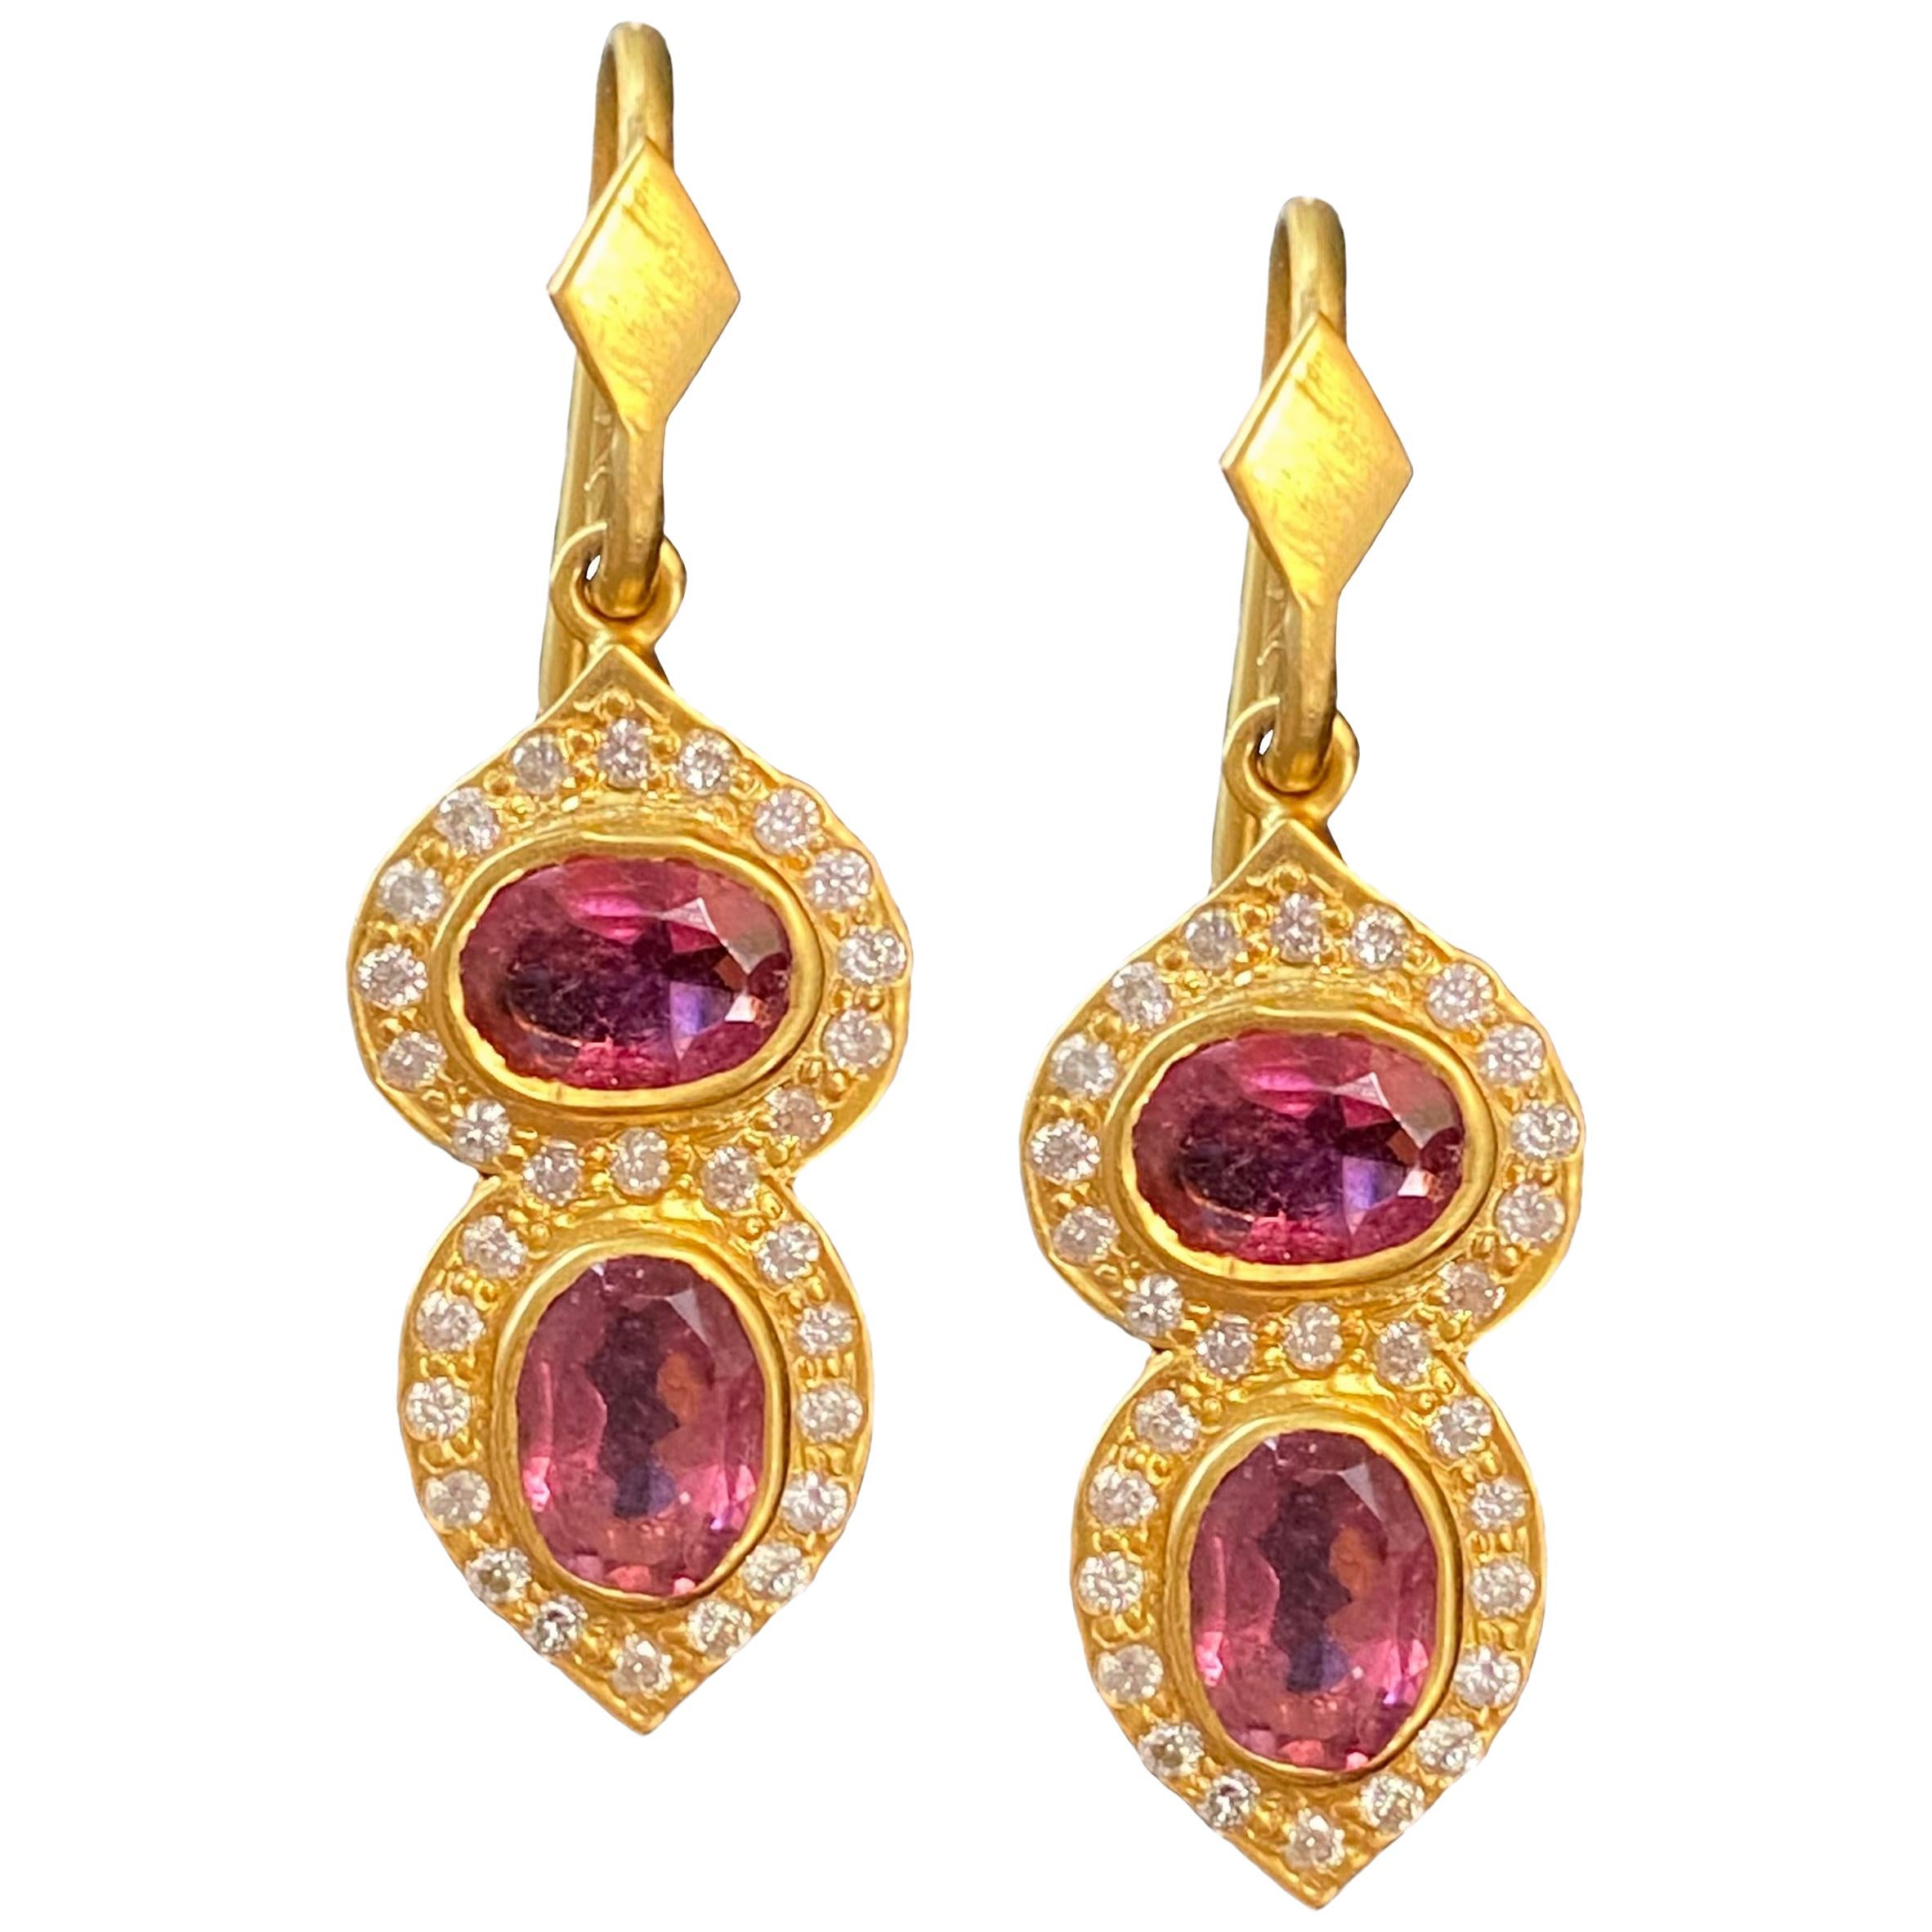 Pink Tourmaline .46 Carat Diamond Gold Earrings by Lauren Harper